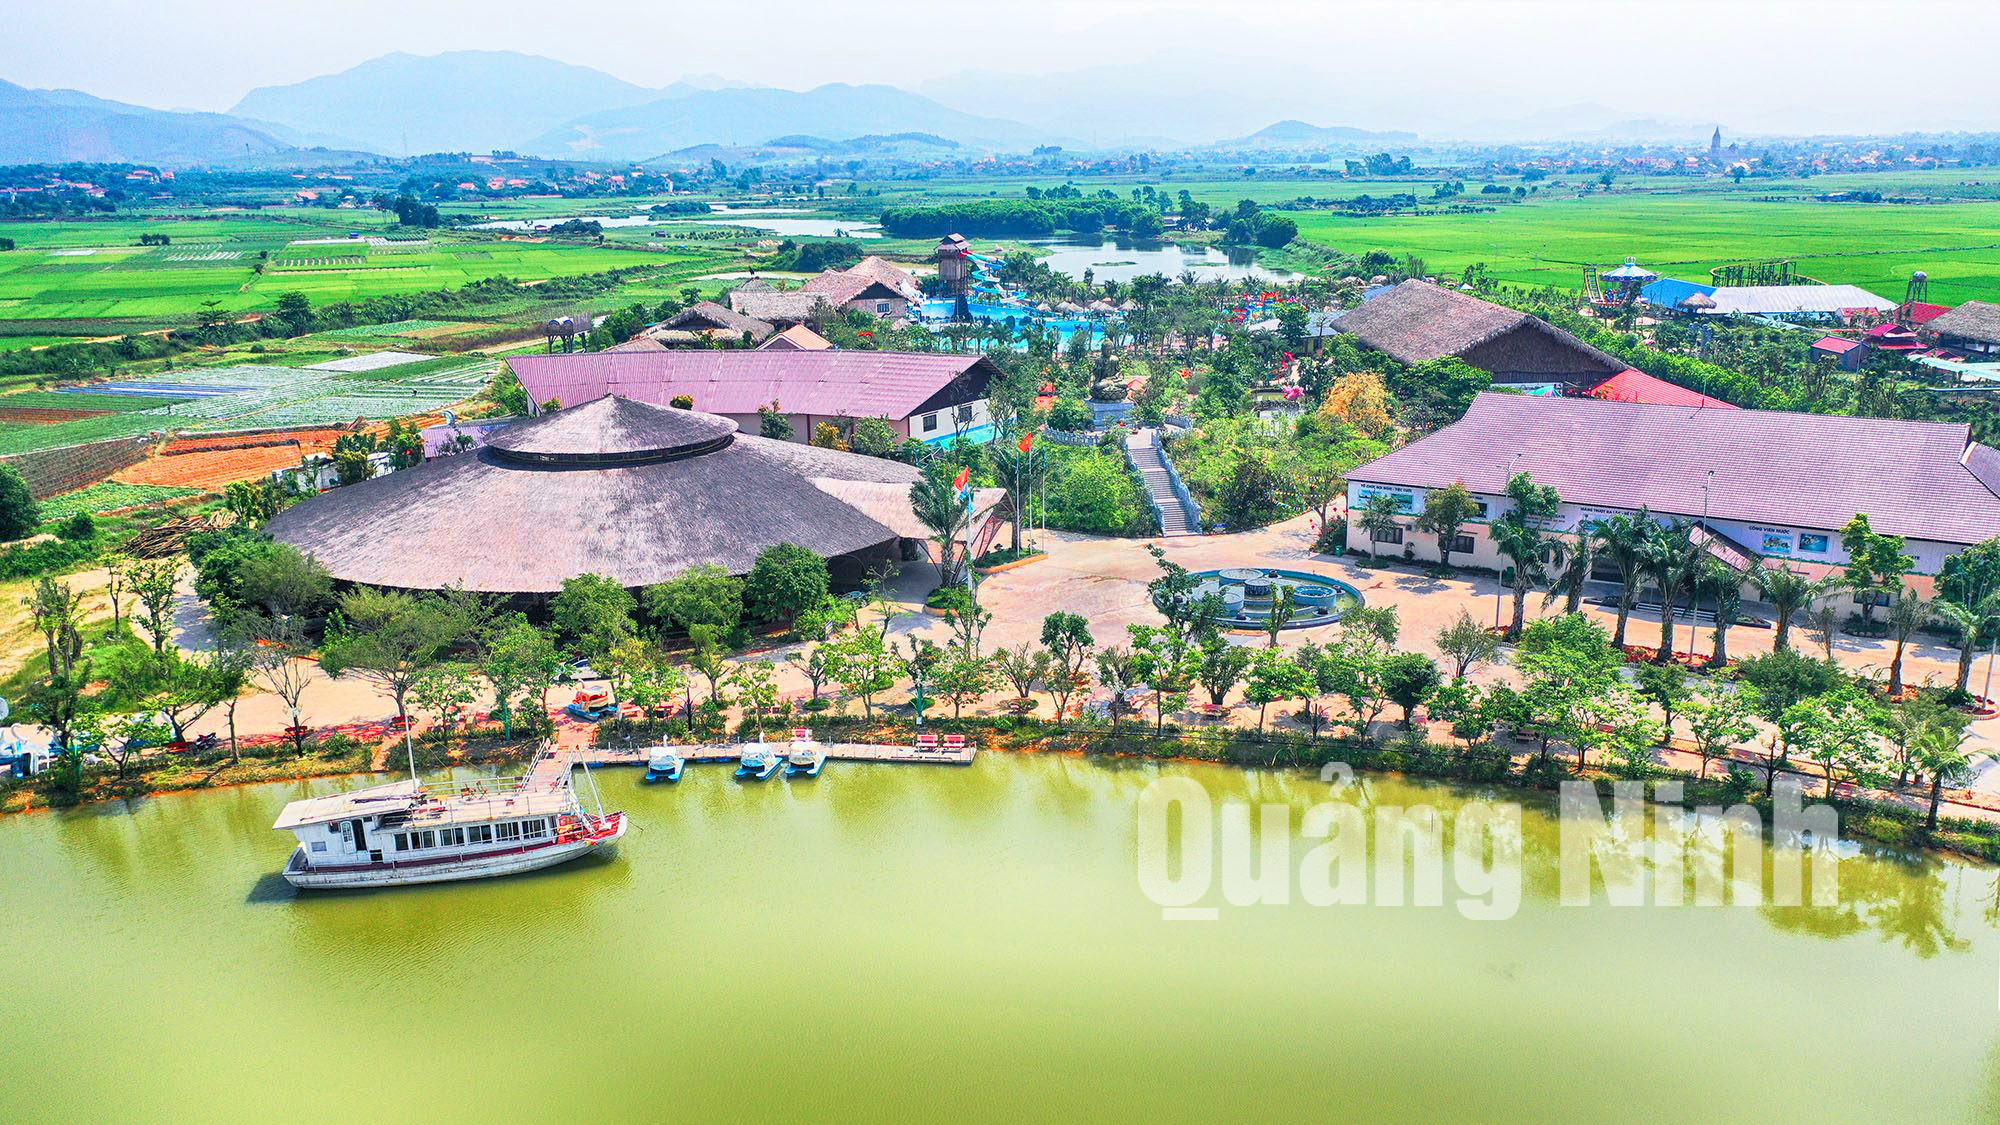 Điểm dừng nghỉ Quảng Ninh GATE nhìn từ trên cao (5-2019). Ảnh: Hùng Sơn